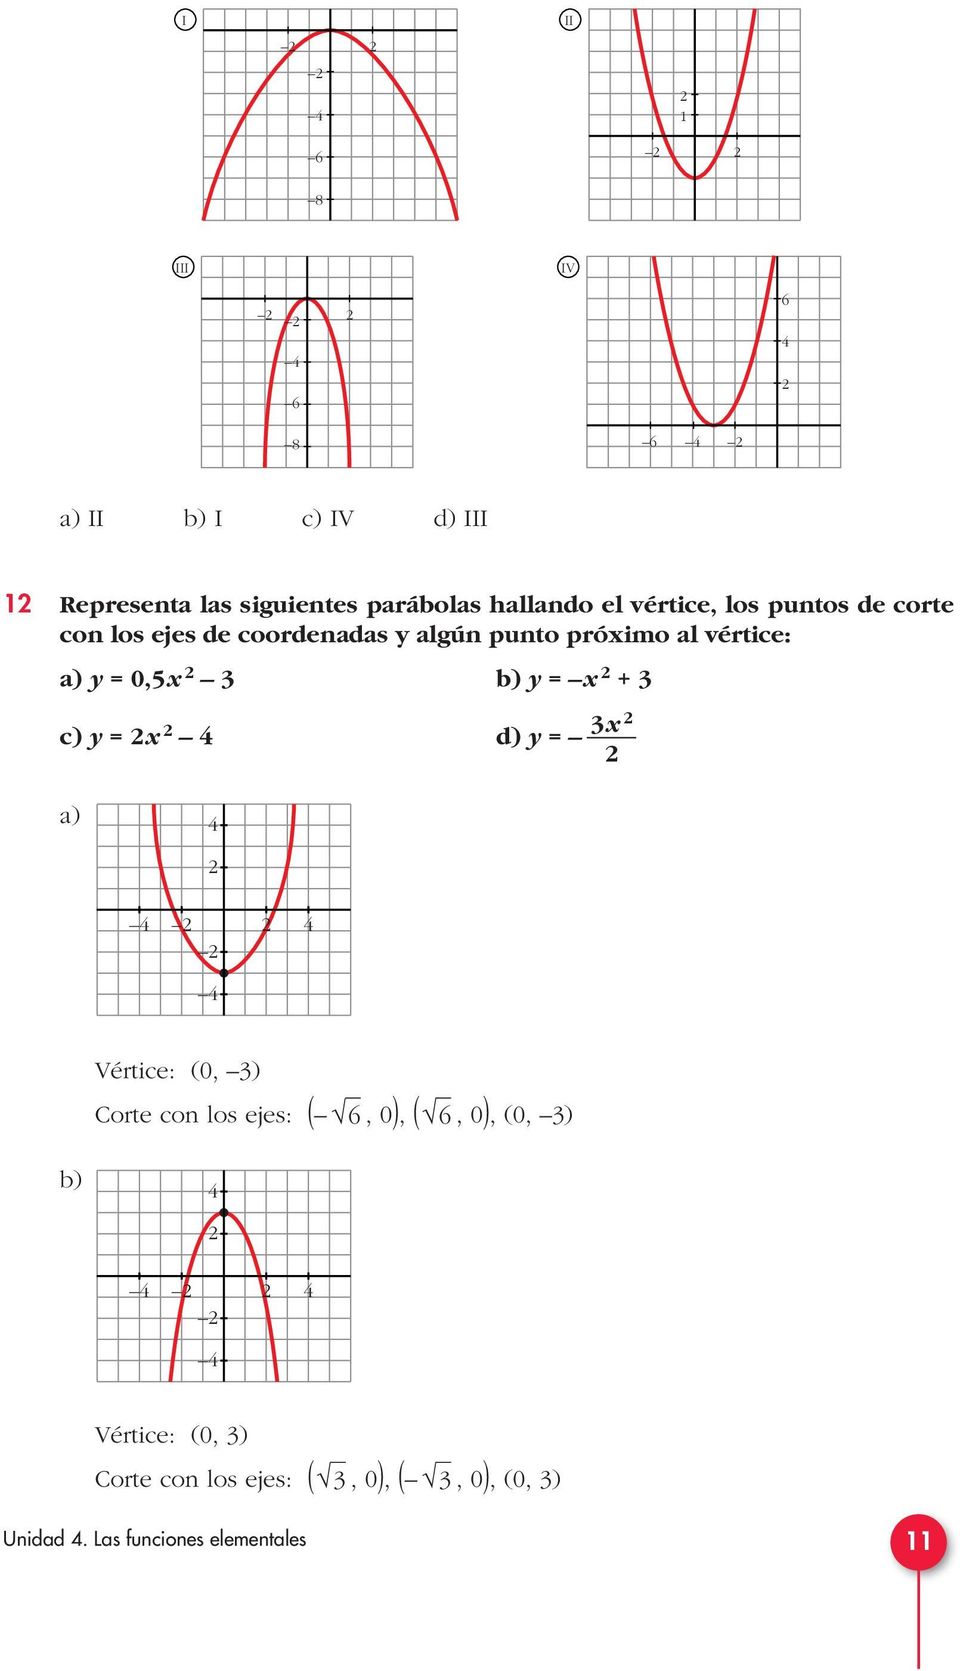 a) y = 0,5 b) y = + c) y = d) y = a) Vértice: (0, ) Corte con los ejes: (, 0), (, 0), (0,